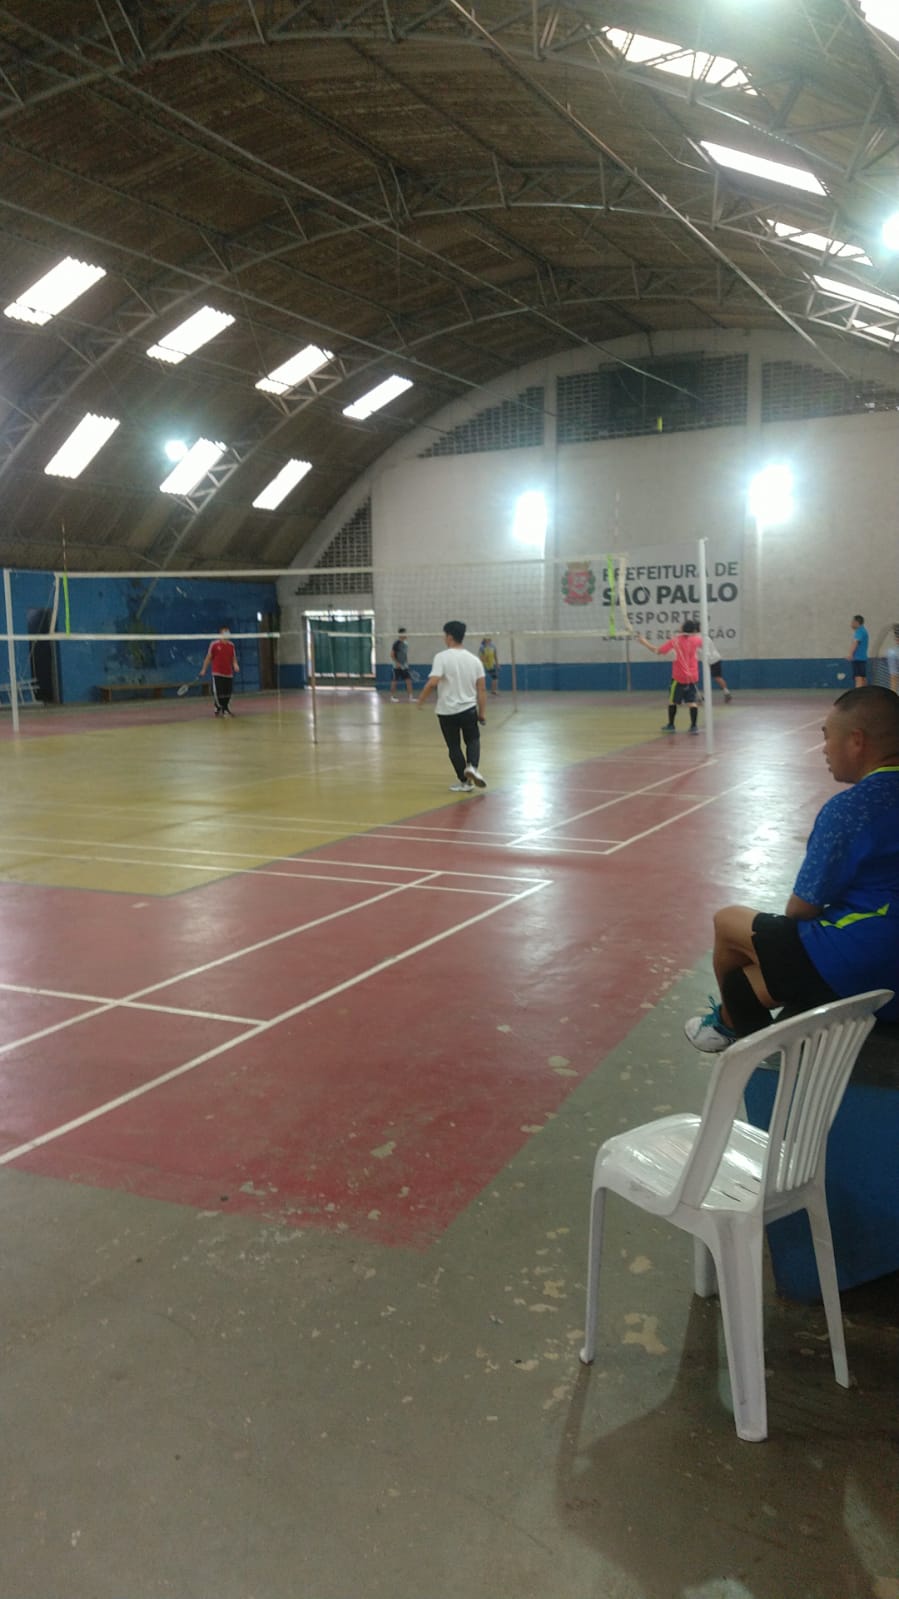 CBBd - Confederação Brasileira de Badminton